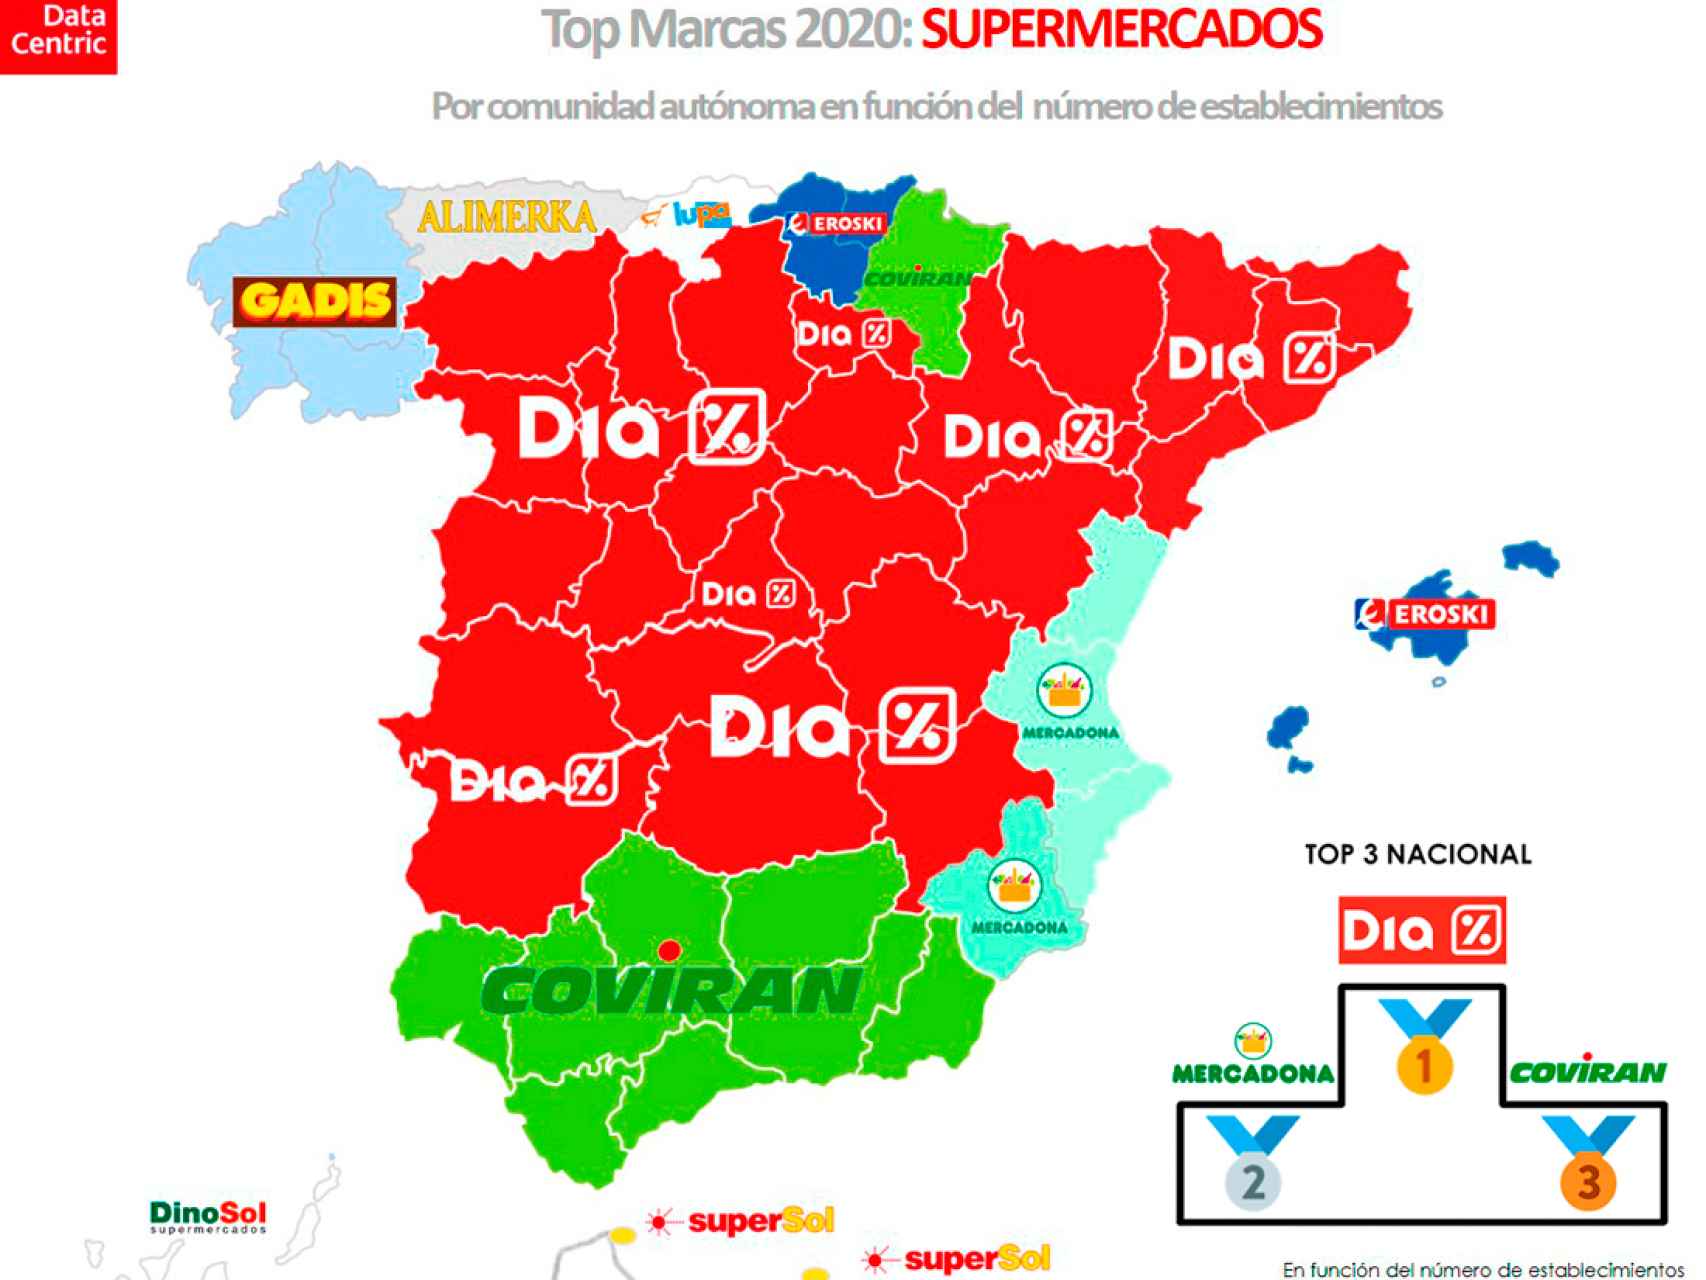 El mapa de las marcas con más número de supermercados en España en 2020.